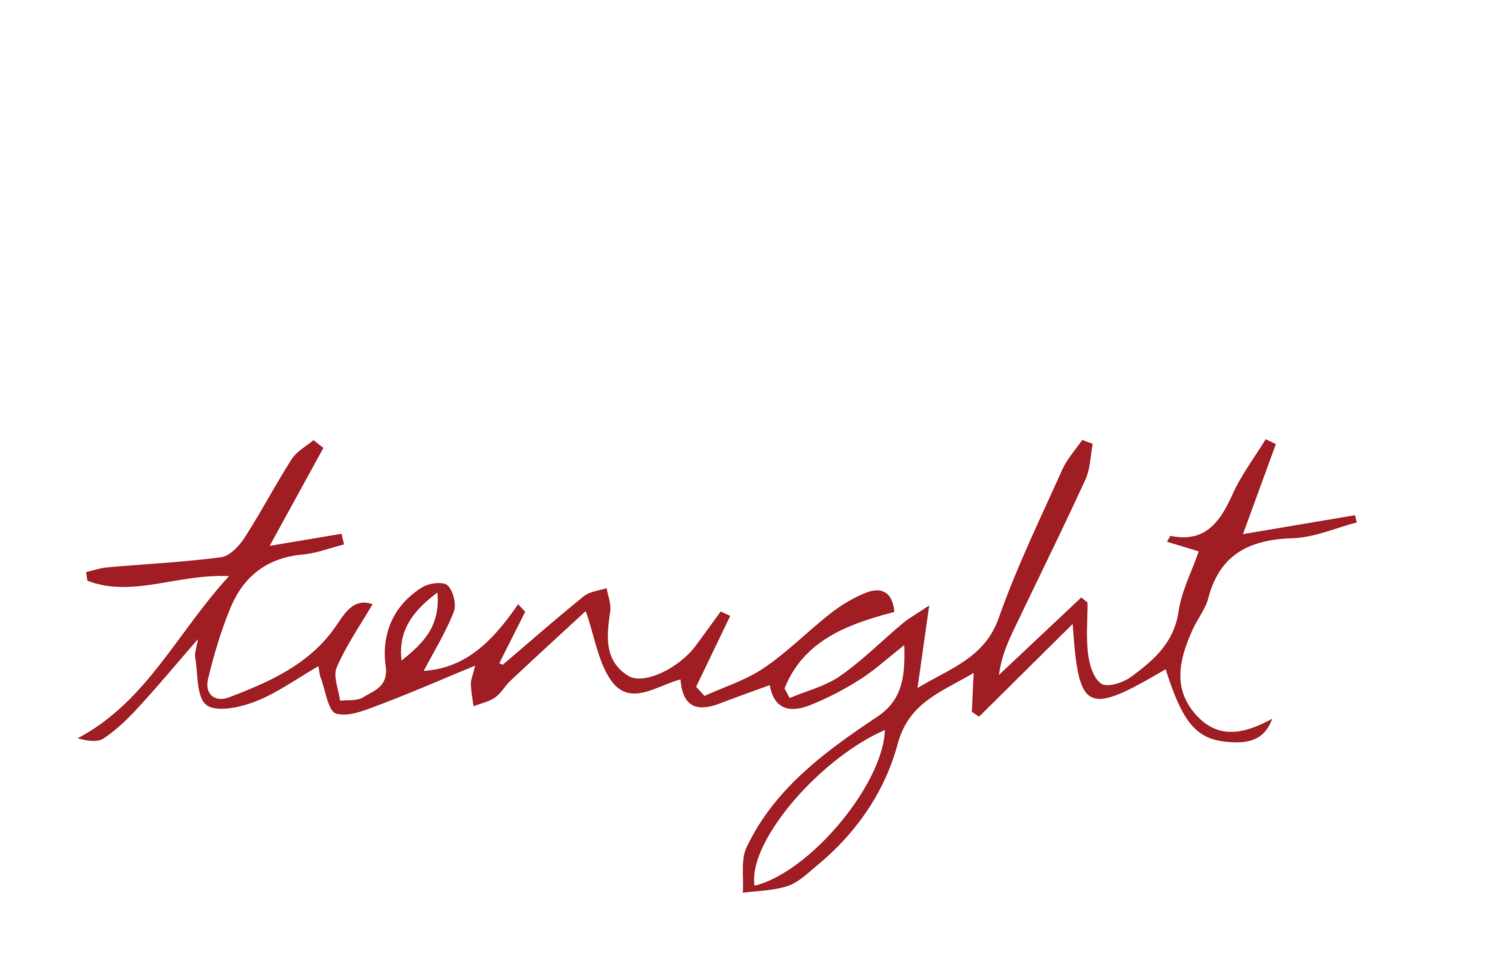 IceHouse Tonight